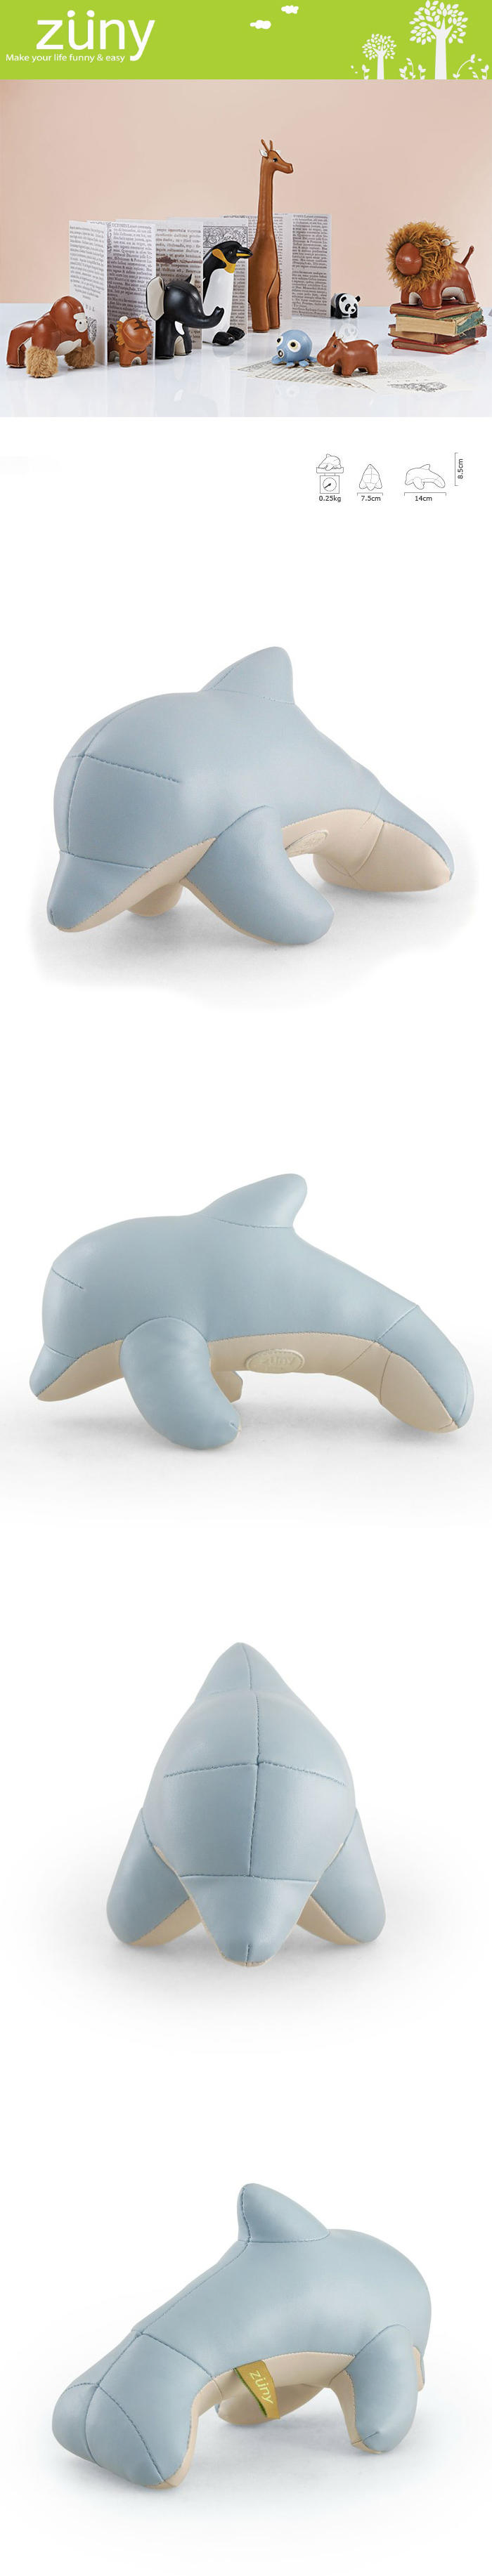 Zuny 海豚造型擺飾書檔 (Dura-藍色)